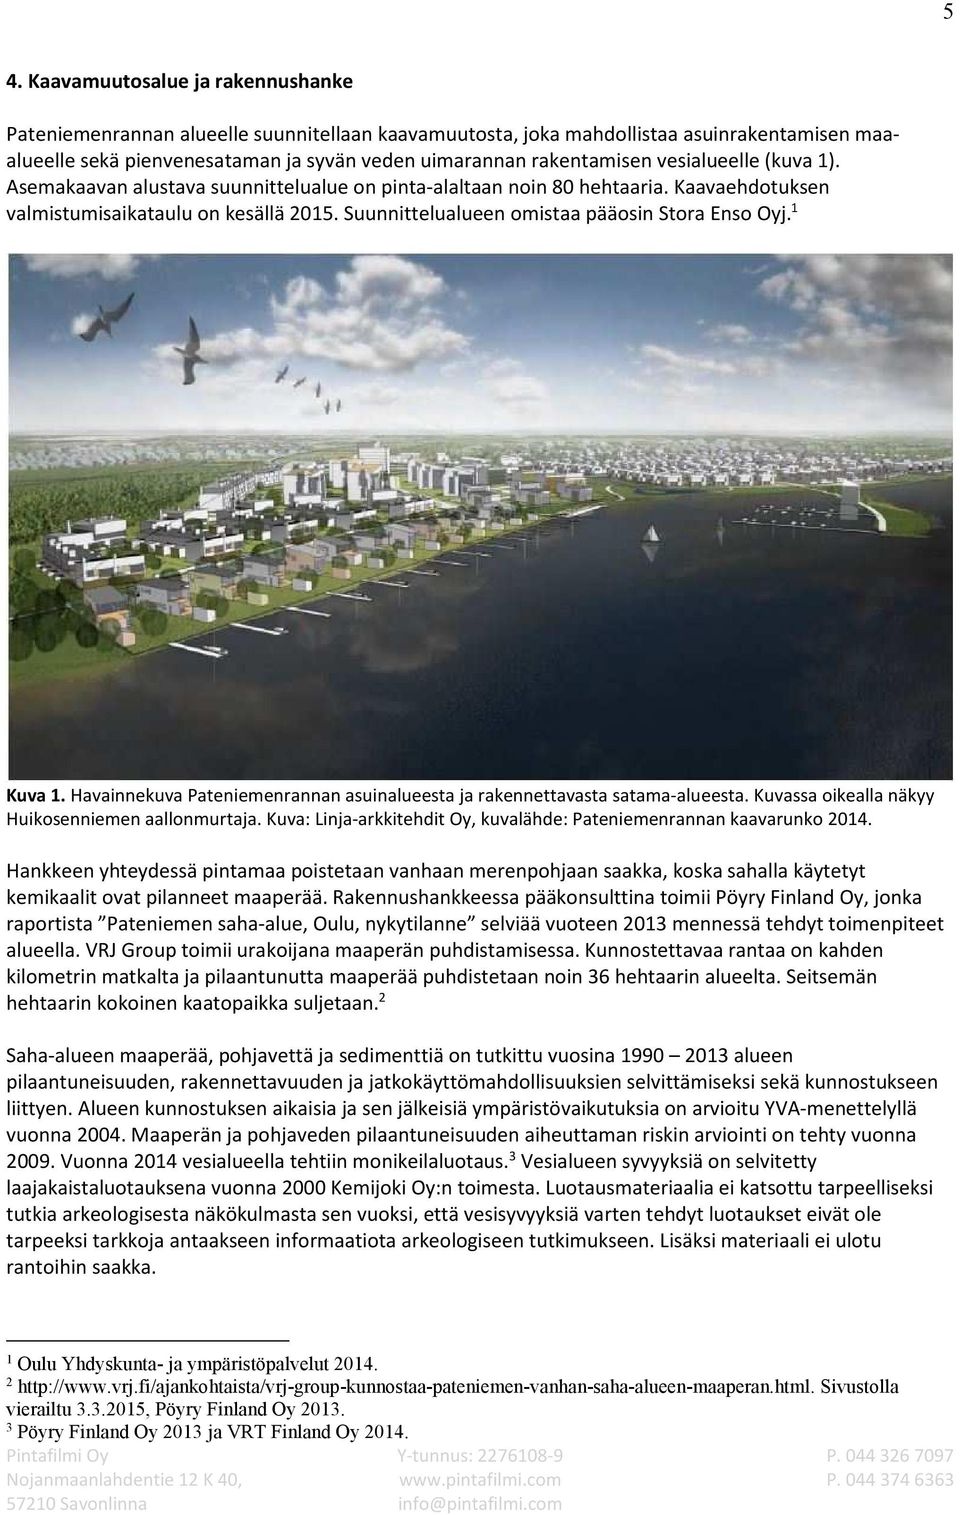 Suunnittelualueen omistaa pääosin Stora Enso Oyj. 1 Kuva 1. Havainnekuva Pateniemenrannan asuinalueesta ja rakennettavasta satama-alueesta. Kuvassa oikealla näkyy Huikosenniemen aallonmurtaja.